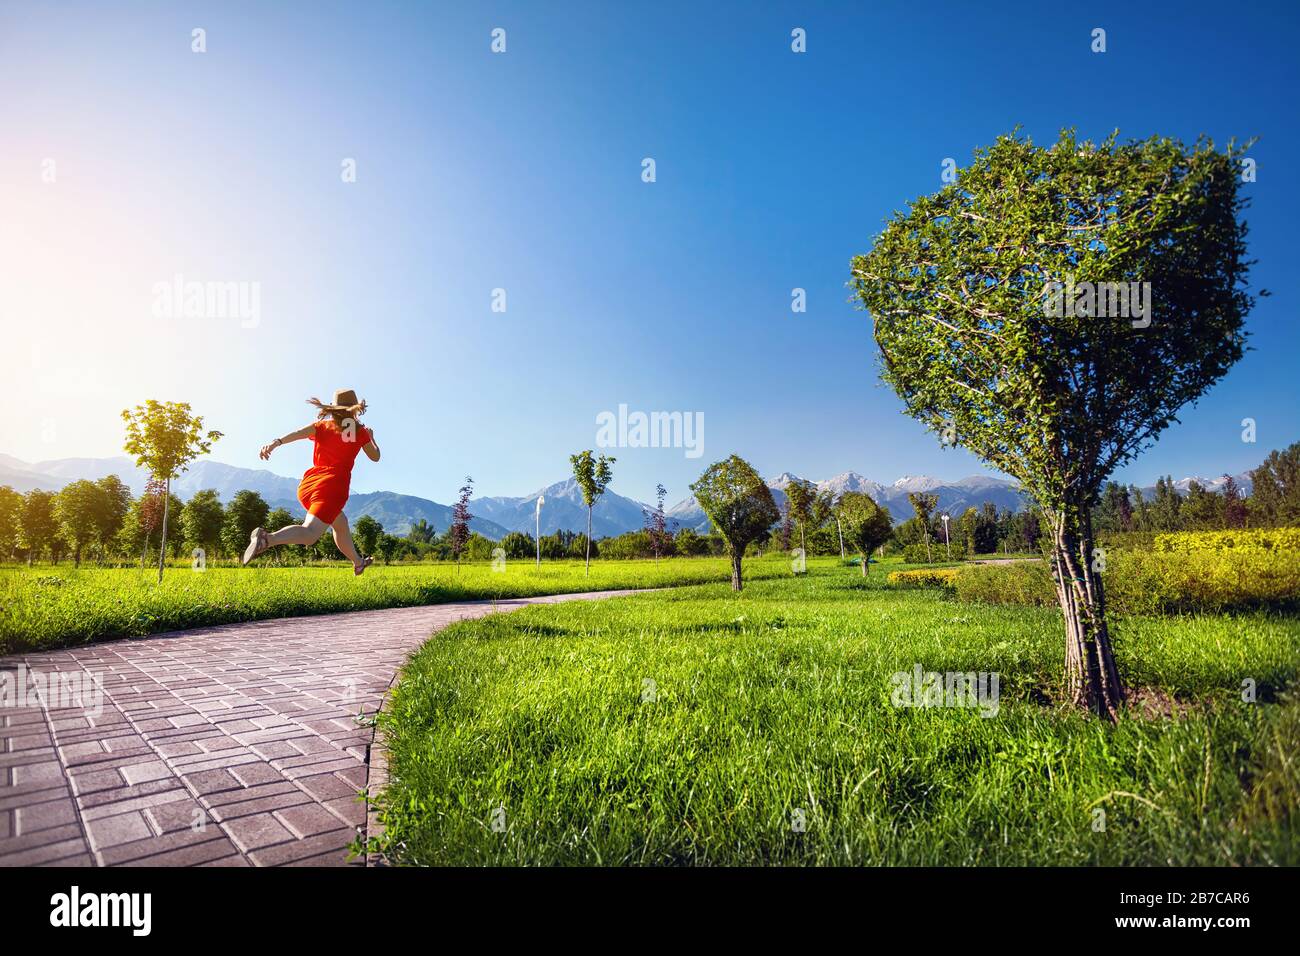 Frau im orangefarbenen Kleid, die im Topiary Garden die Straße runter läuft und surreale Bäume in Würfelform aufweist Stockfoto